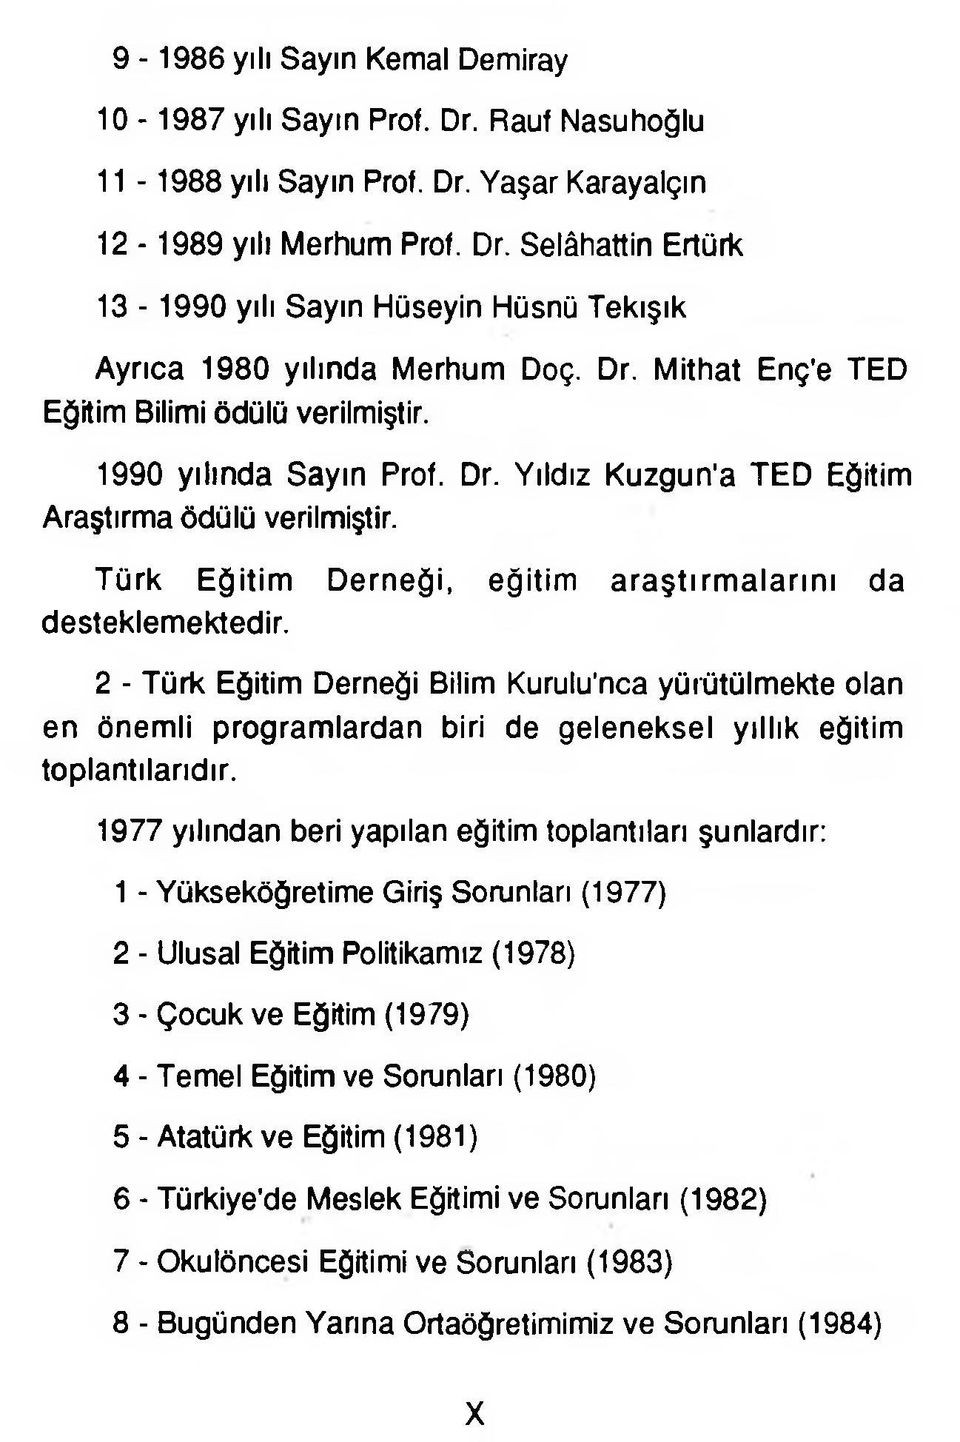 Türk Eğitim Derneği, eğitim araştırm alarını da desteklemektedir. 2 - Türk Eğitim Derneği Bilim Kurulu'nca yürütülmekte olan en önemli programlardan biri de geleneksel yıllık eğitim toplantılarıdır.